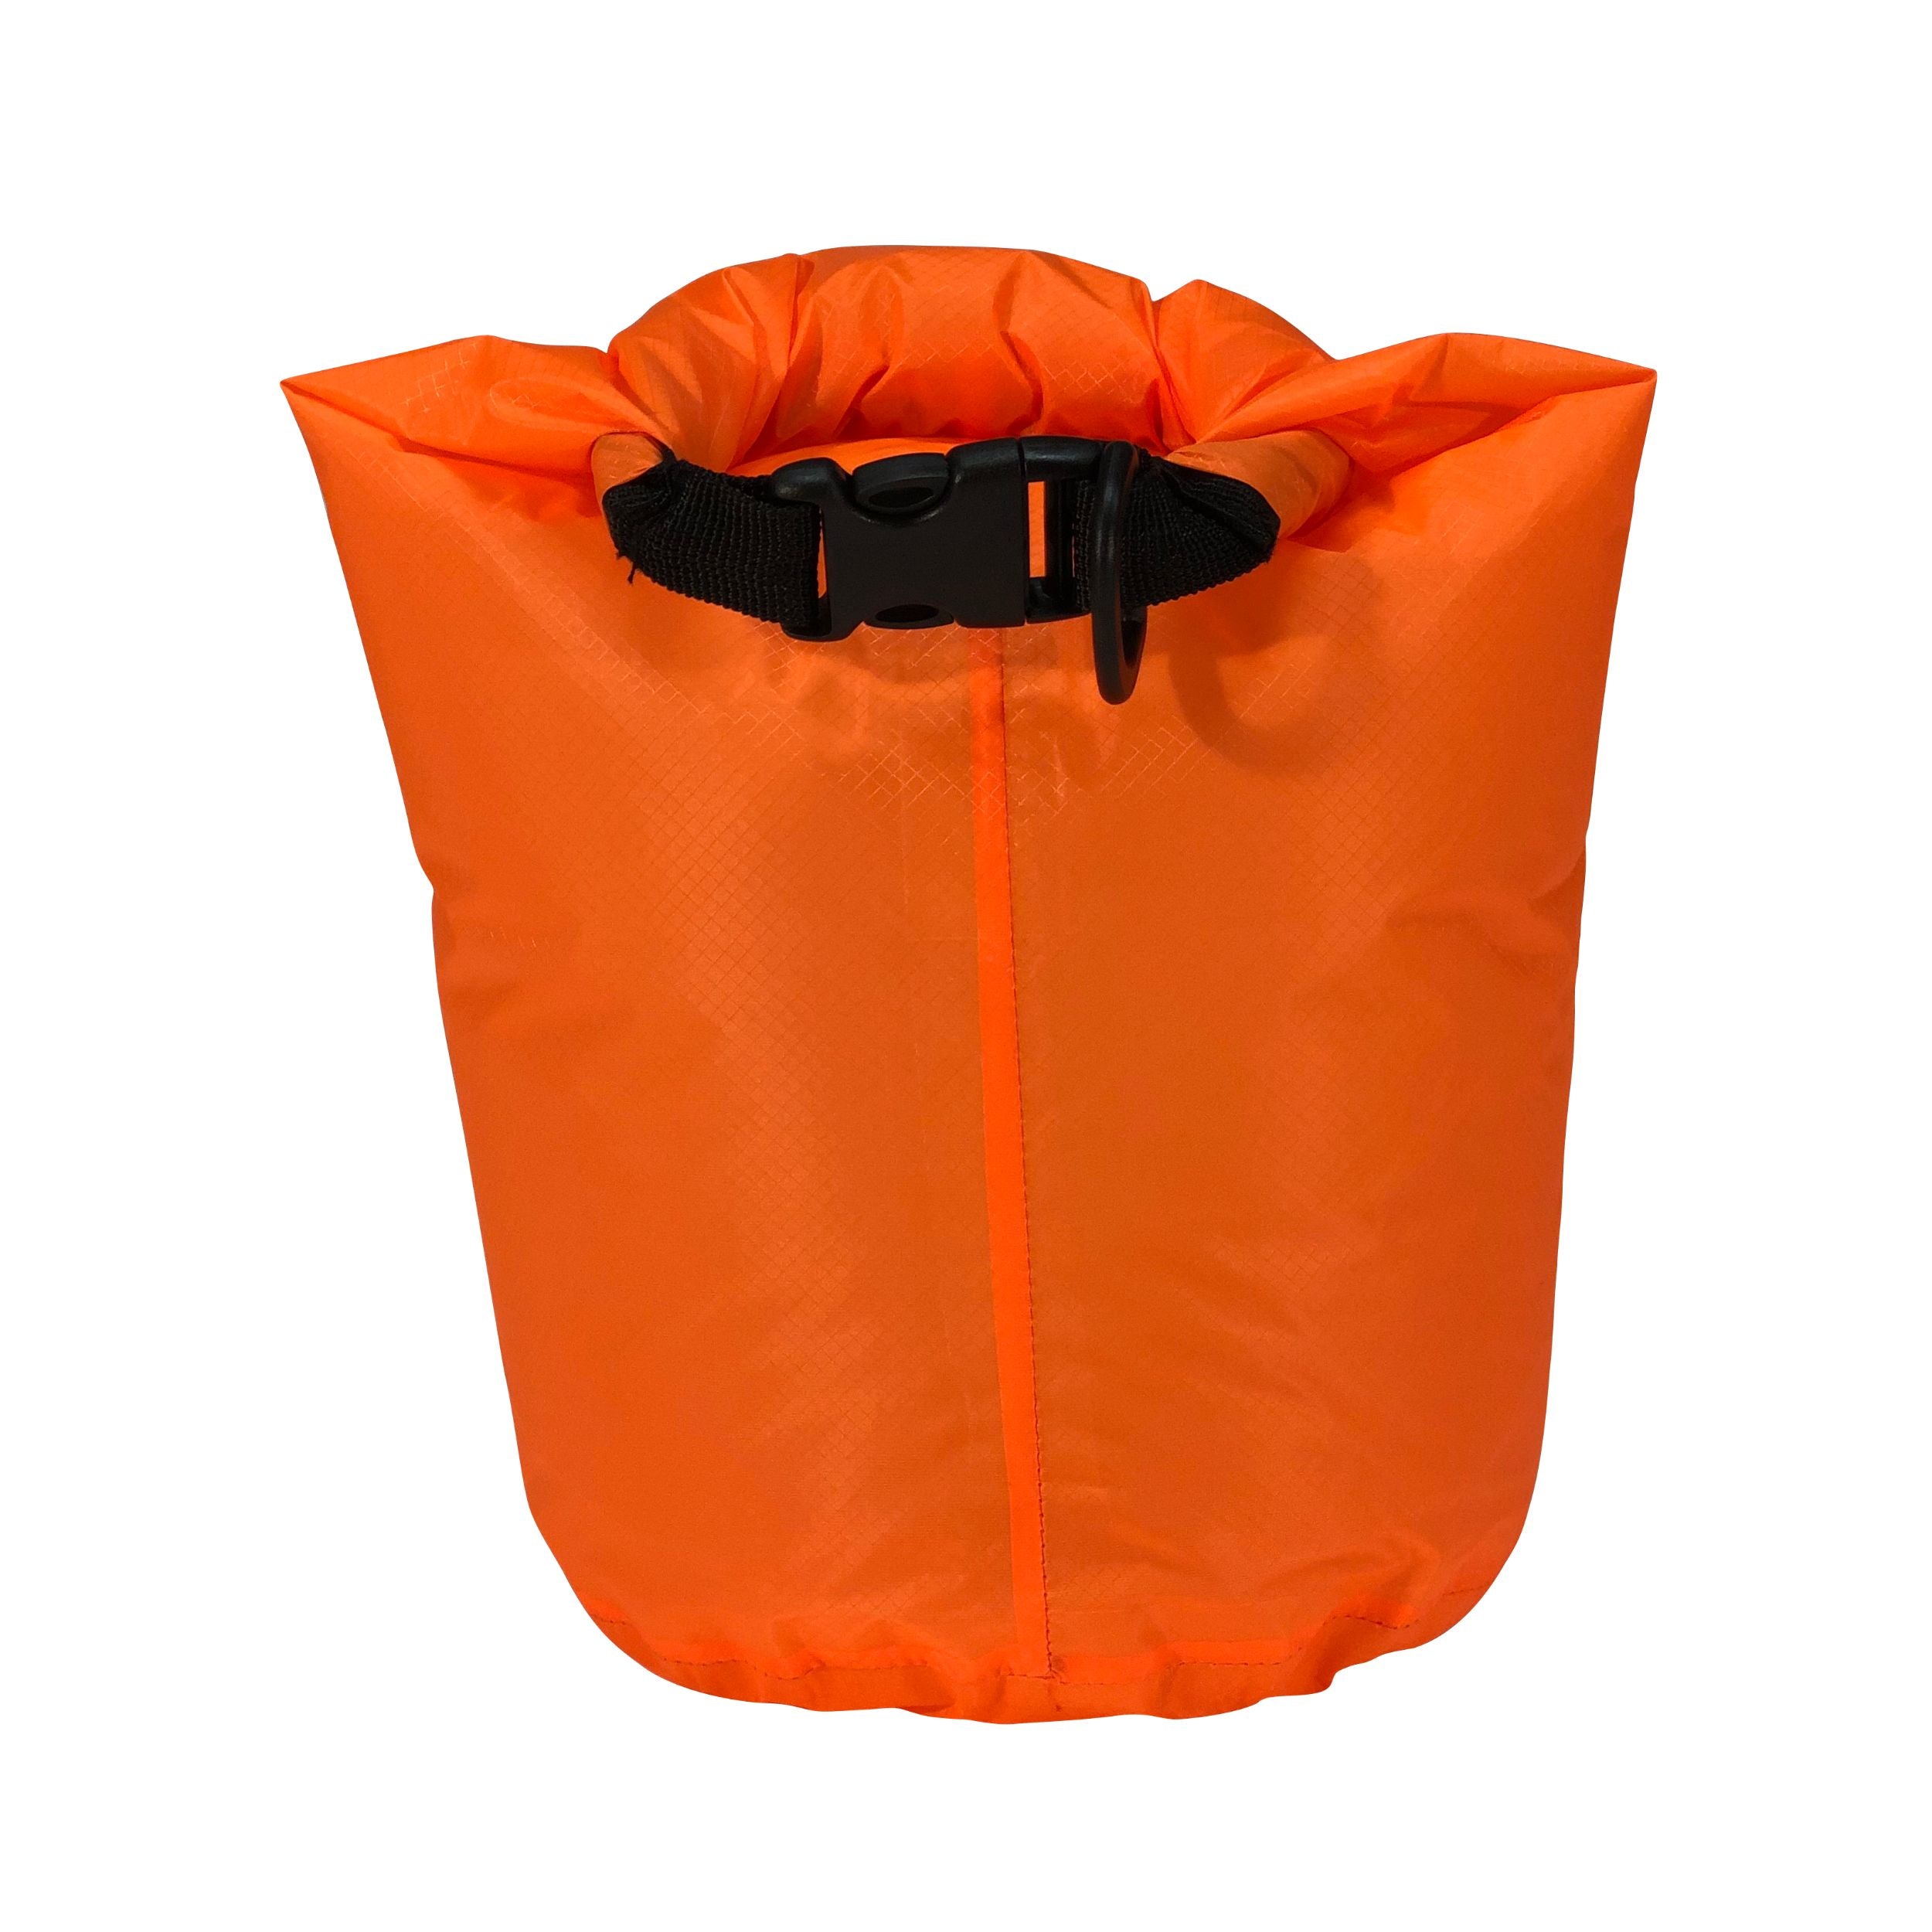 Outlife Waterproof Dry Bag Lightweight 4 Liters